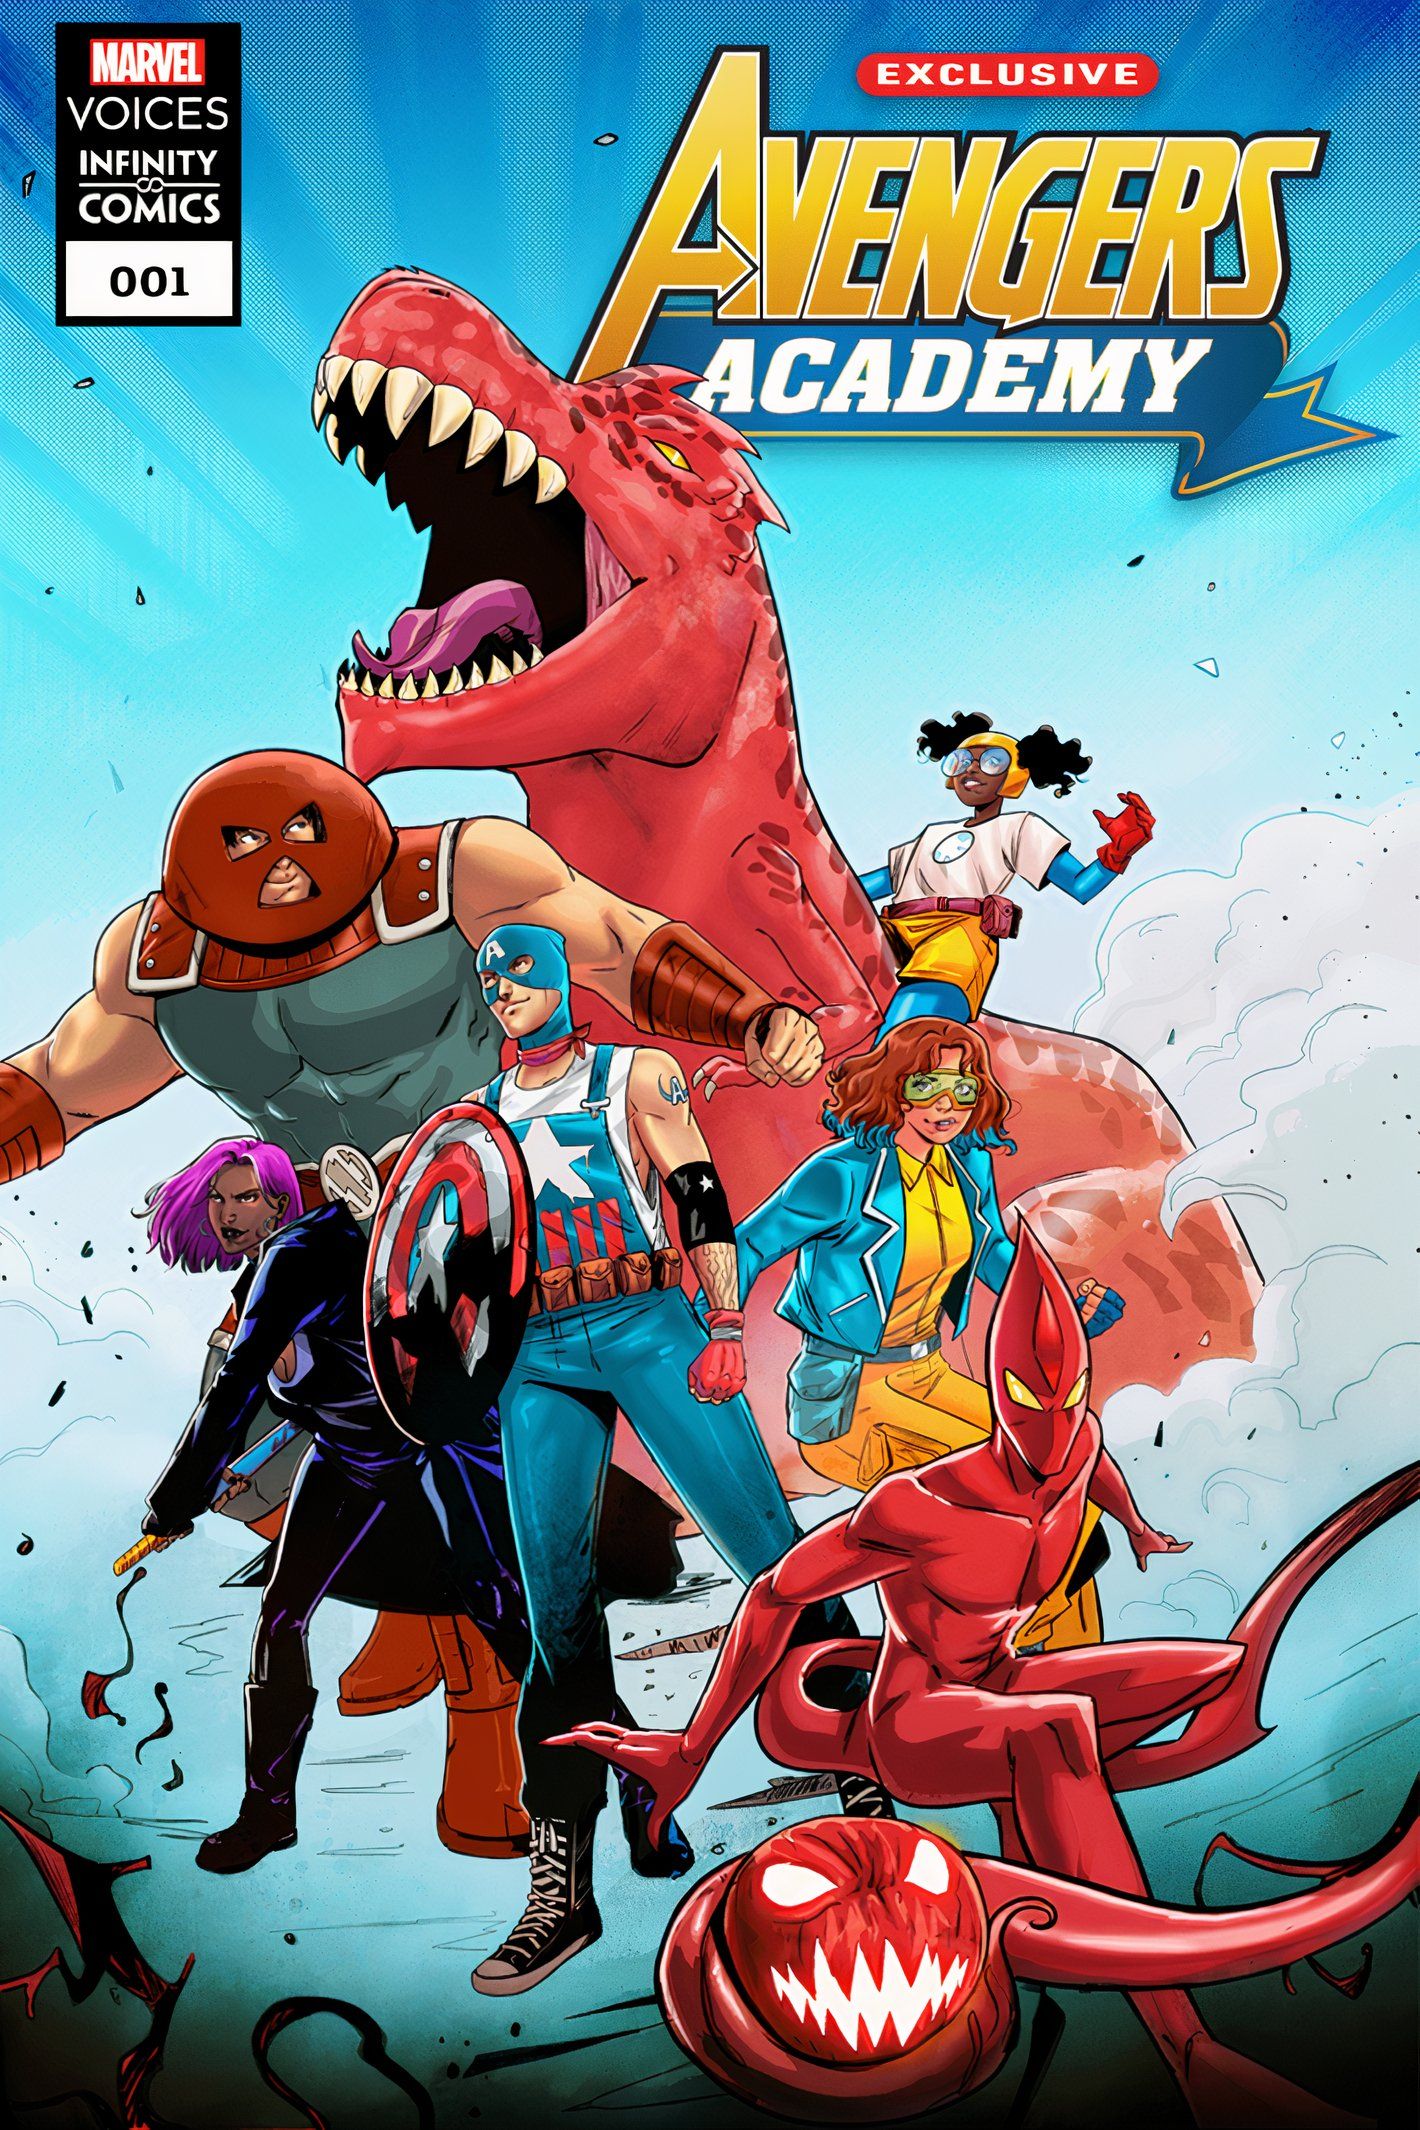 Capa da revista Avengers Academy: Marvel Voices #1, com Kid Fanático, Duende Vermelho e outros jovens heróis emergentes.